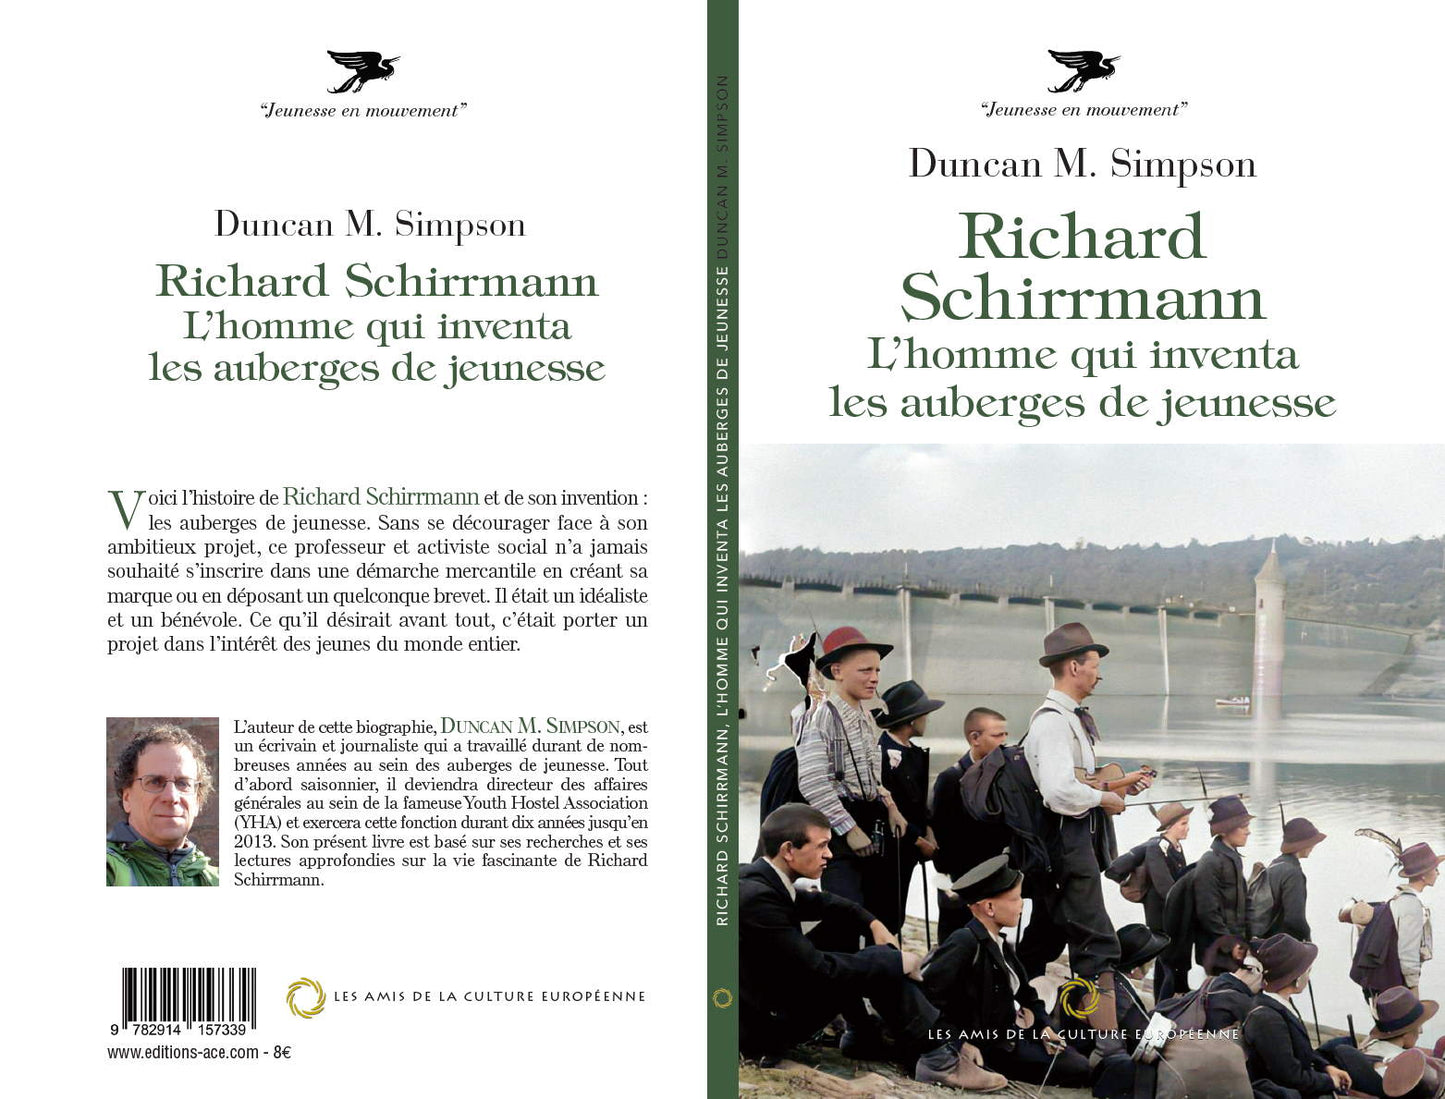 Richard Schirrmann: L’homme qui inventa les auberges de jeunesse